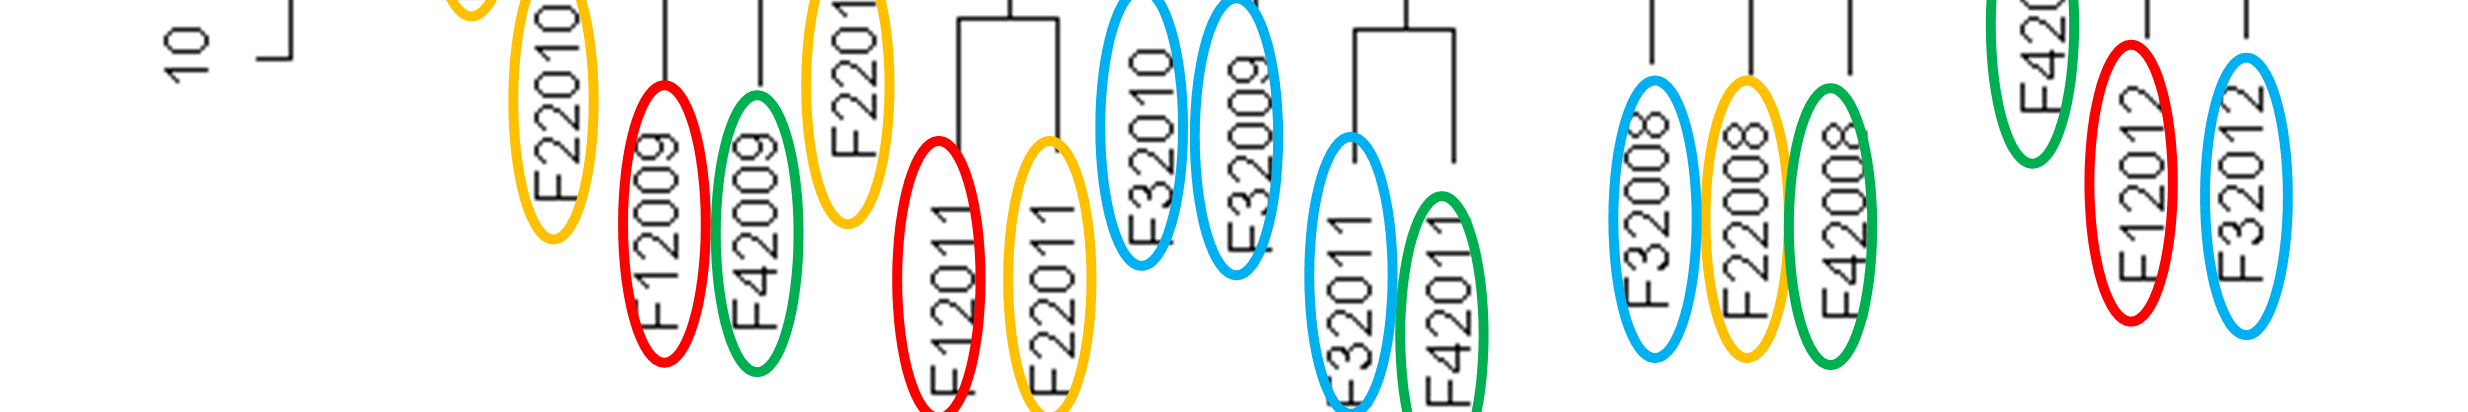 Figuur 12 Complete linkage clusteranalyse van jaargegevens per fuik (n=20) in het IJzer estuarium (2008-2012). Zelfde kleuraanduiding per jaar.